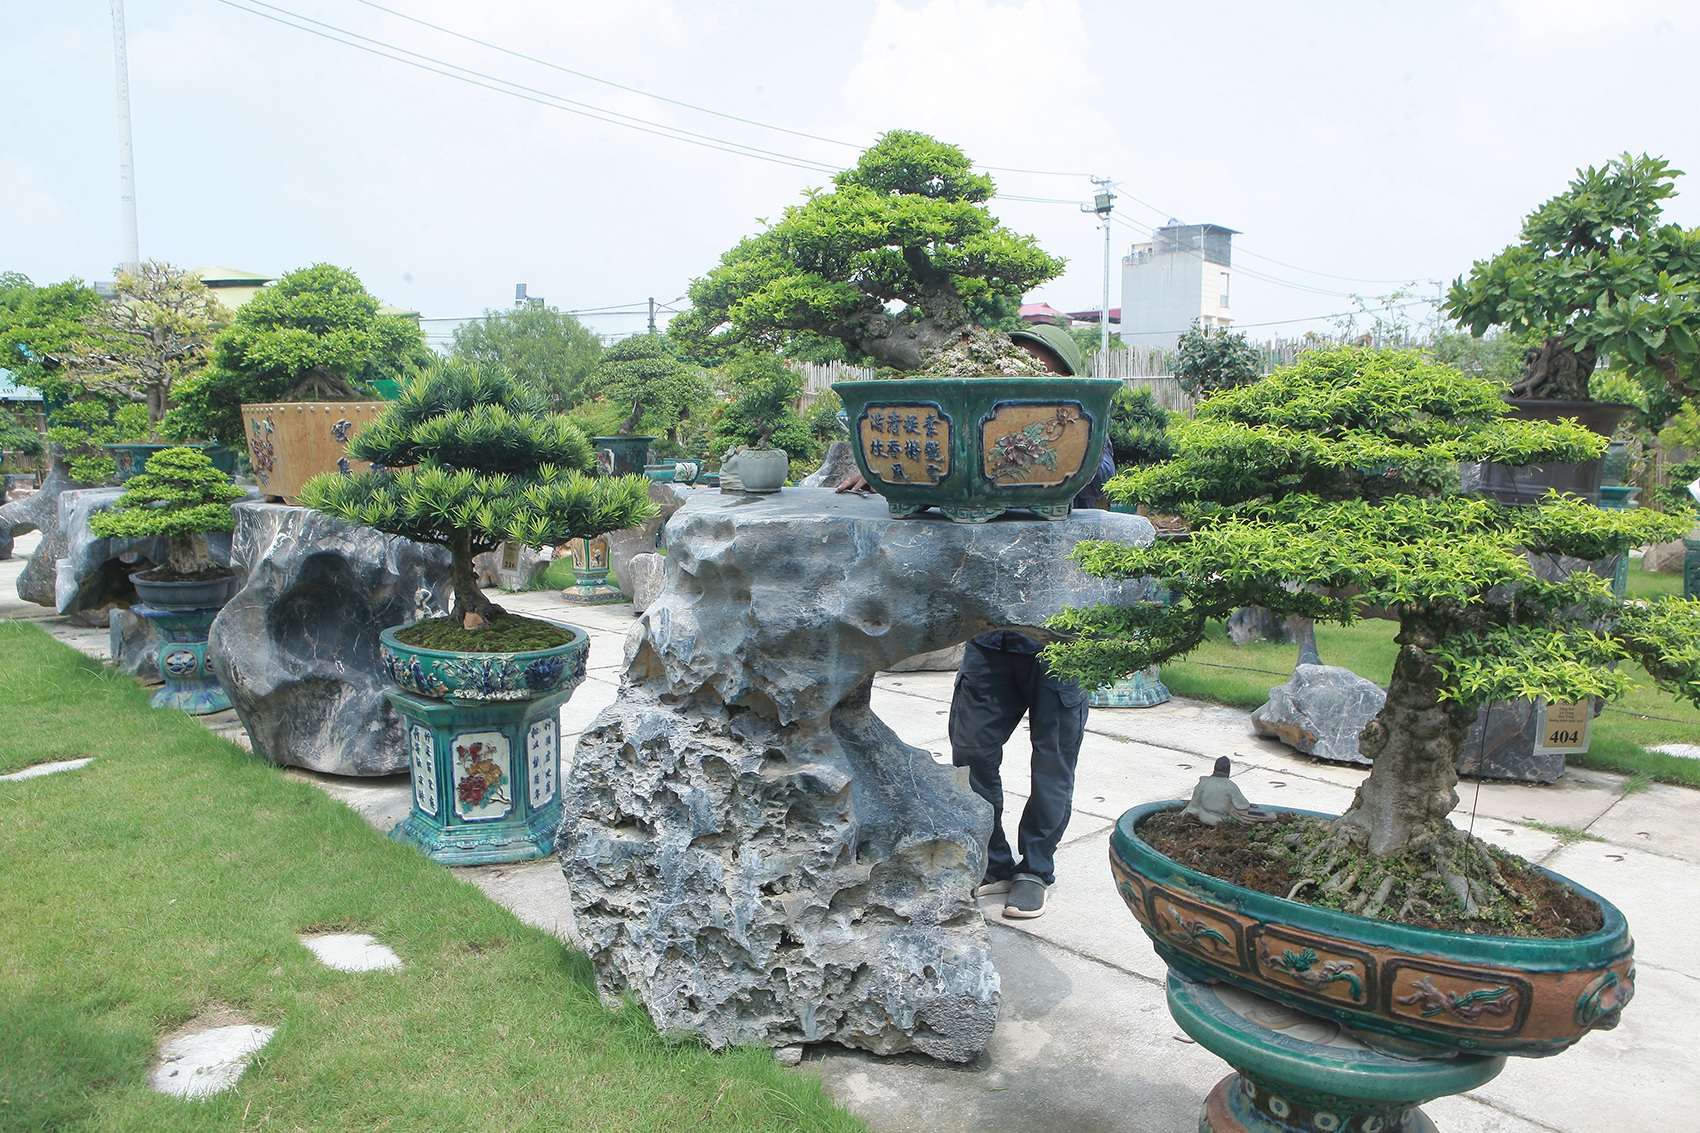 Mục sở thị khu vườn gần 1.000 cây cảnh bonsai hiếm có đất Hà Thành - 2